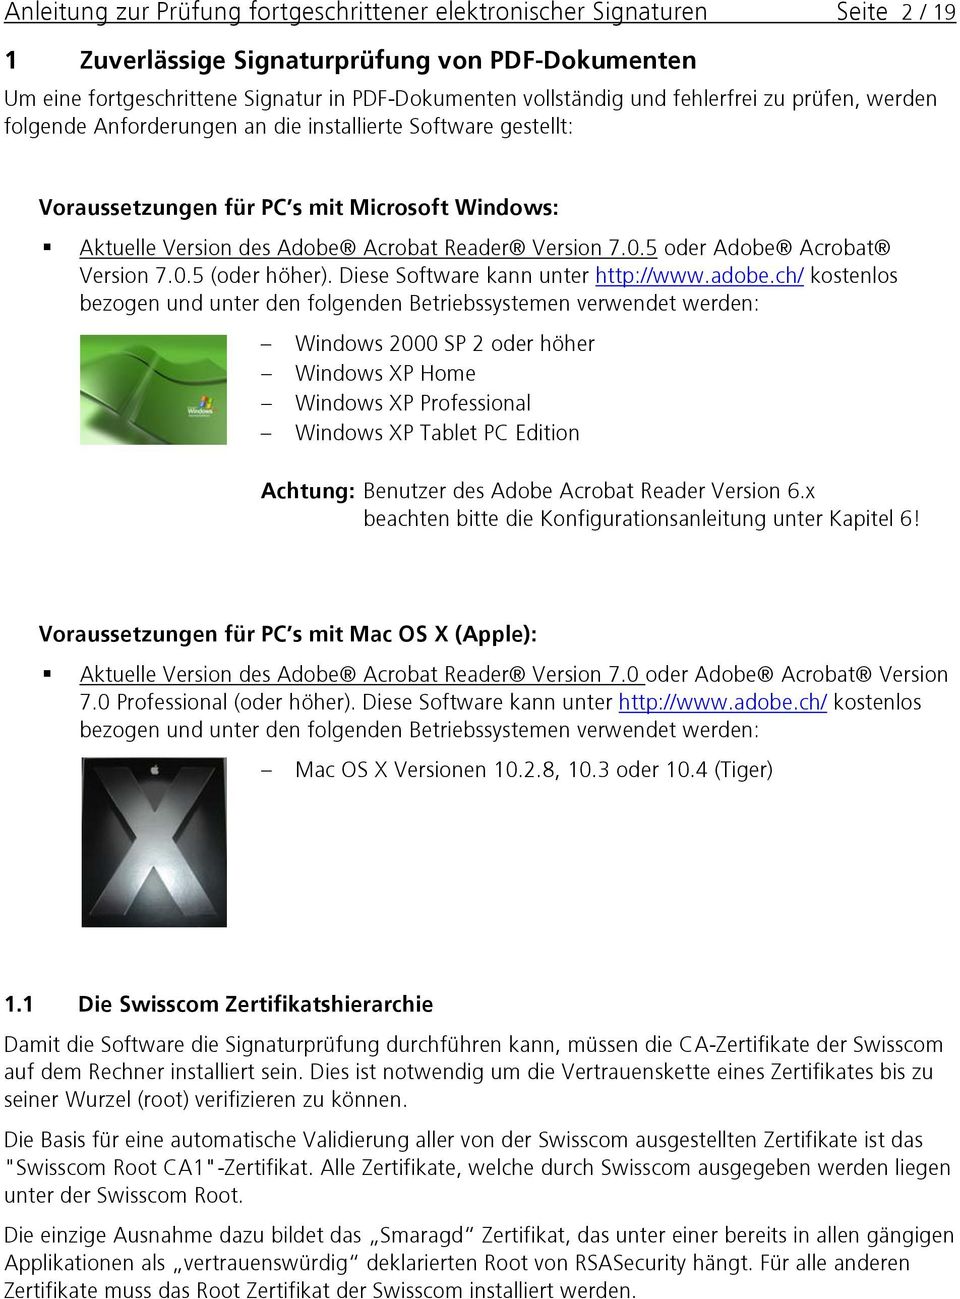 5 oder Adobe Acrobat Version 7.0.5 (oder höher). Diese Software kann unter http://www.adobe.